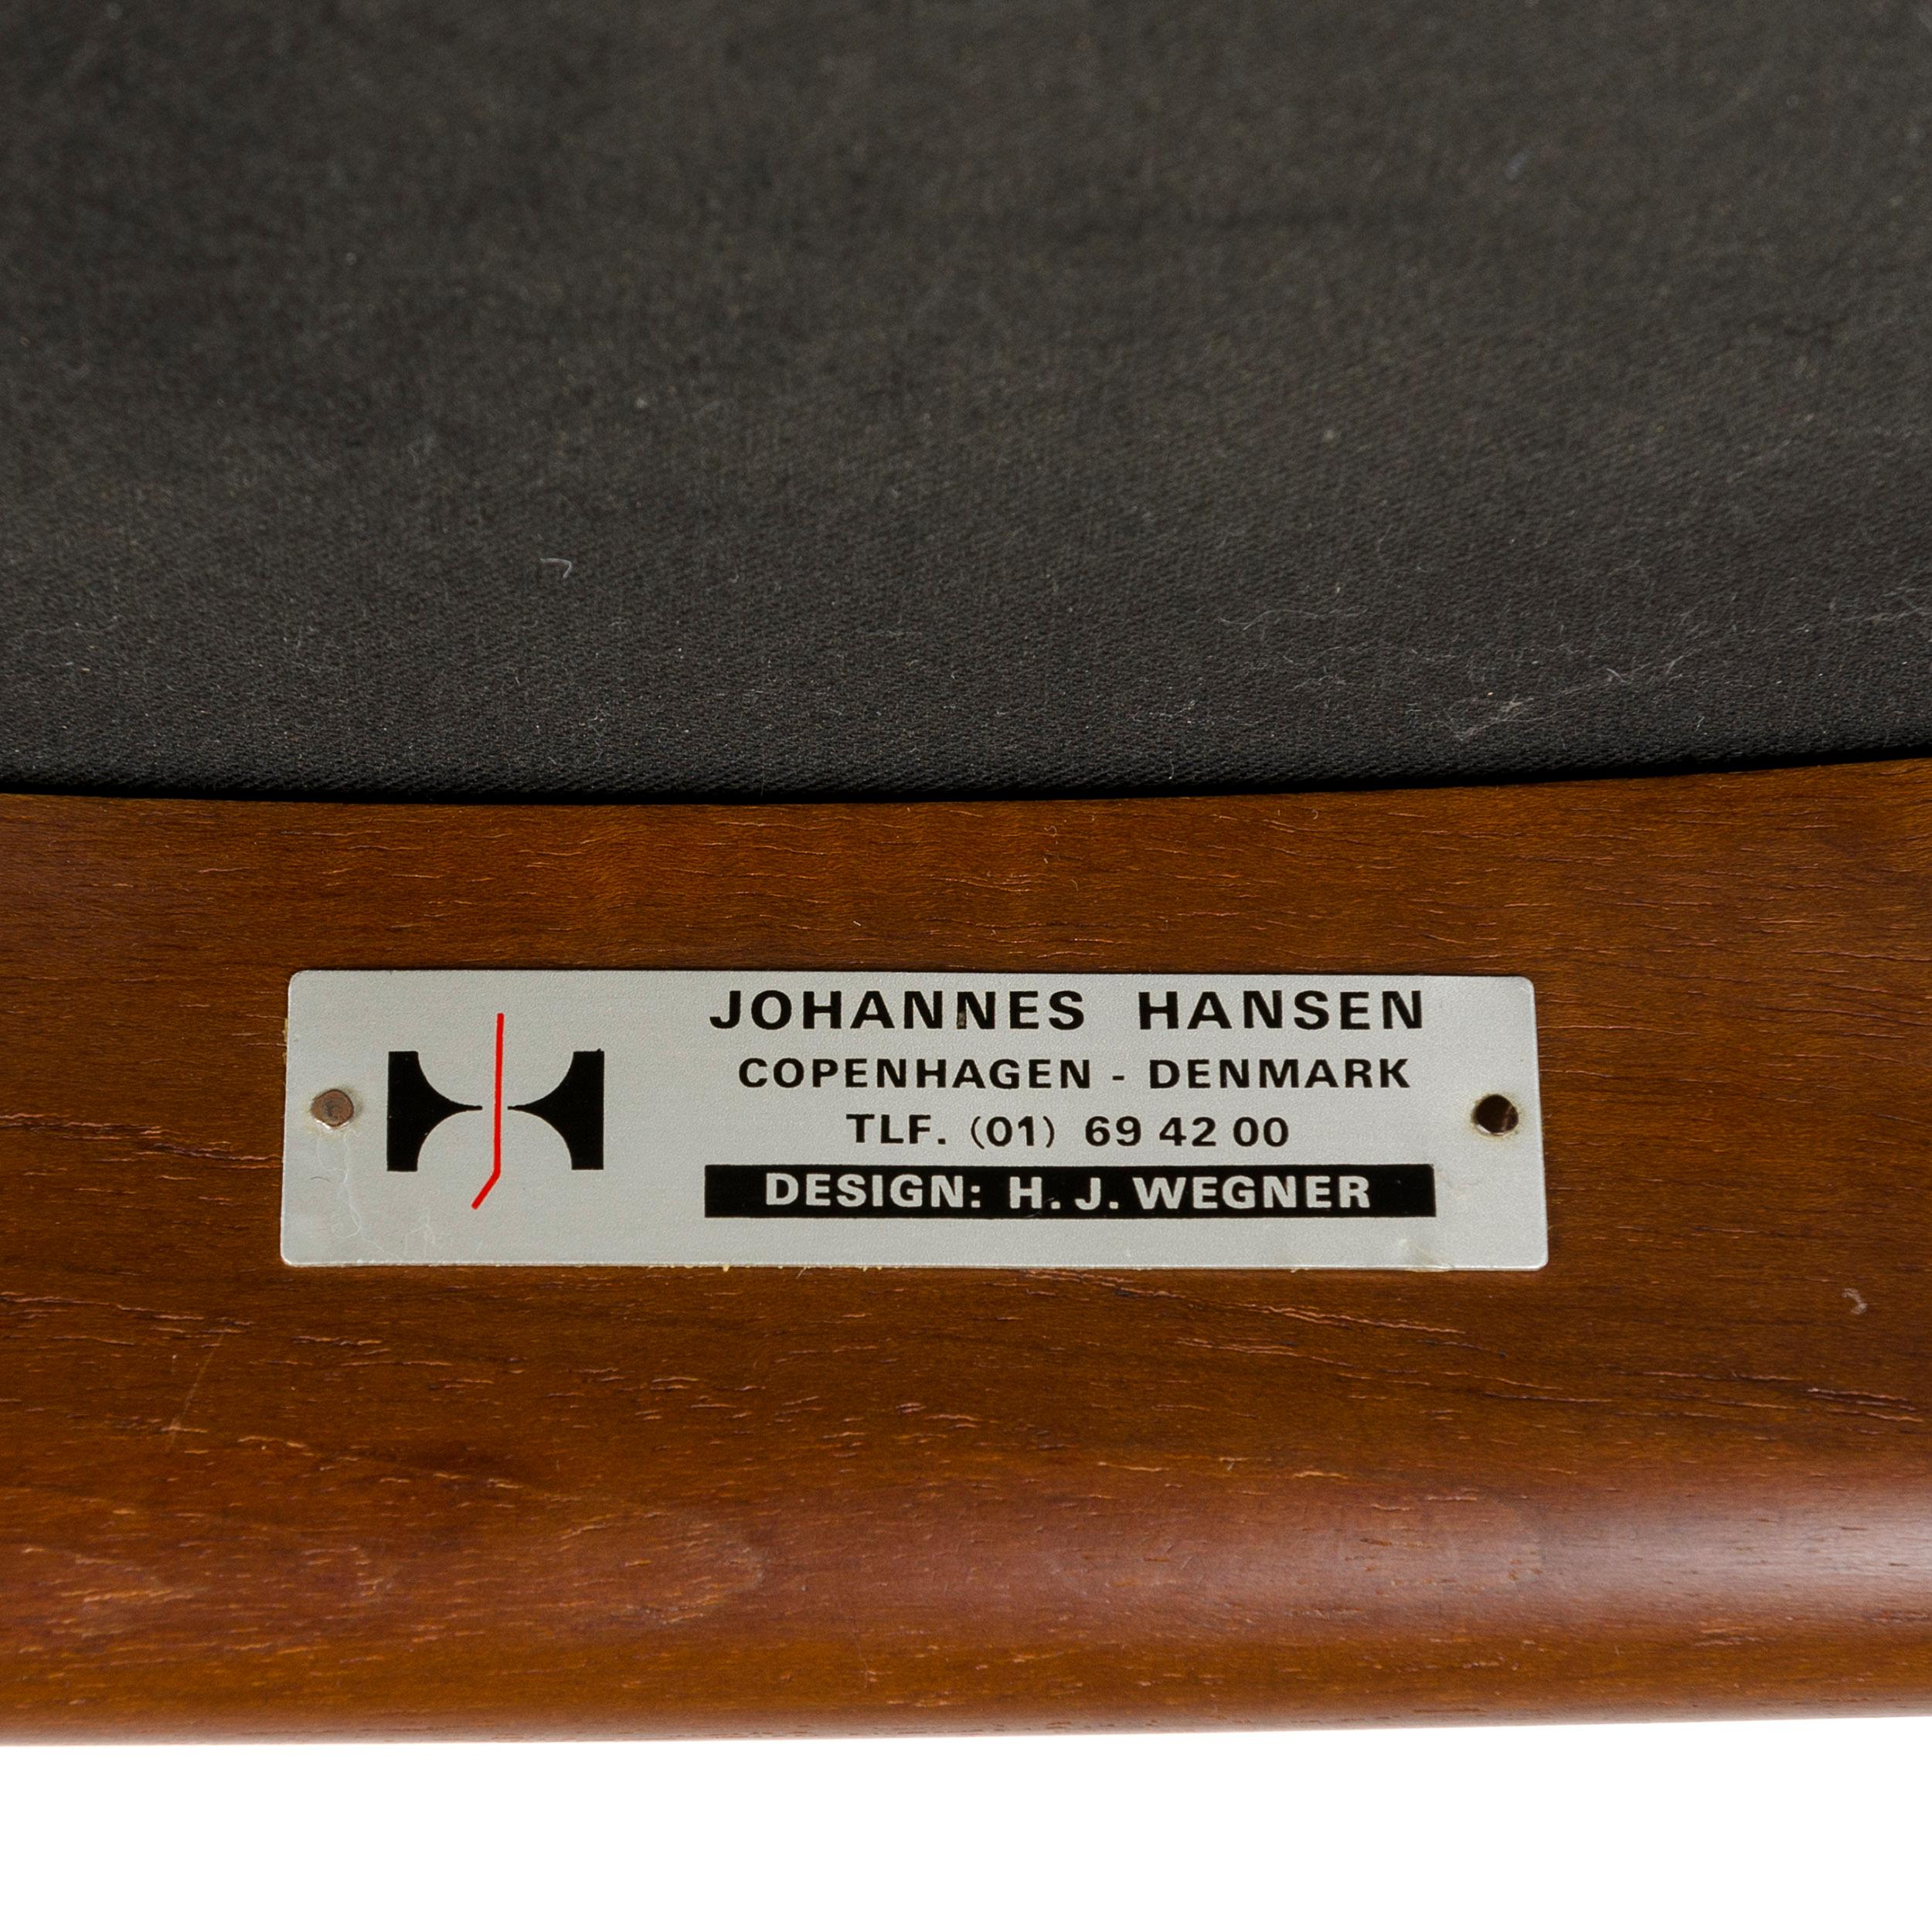 1960s Danish Teak Dining Chair by Hans J. Wegner for Johannes Hansen For Sale 1